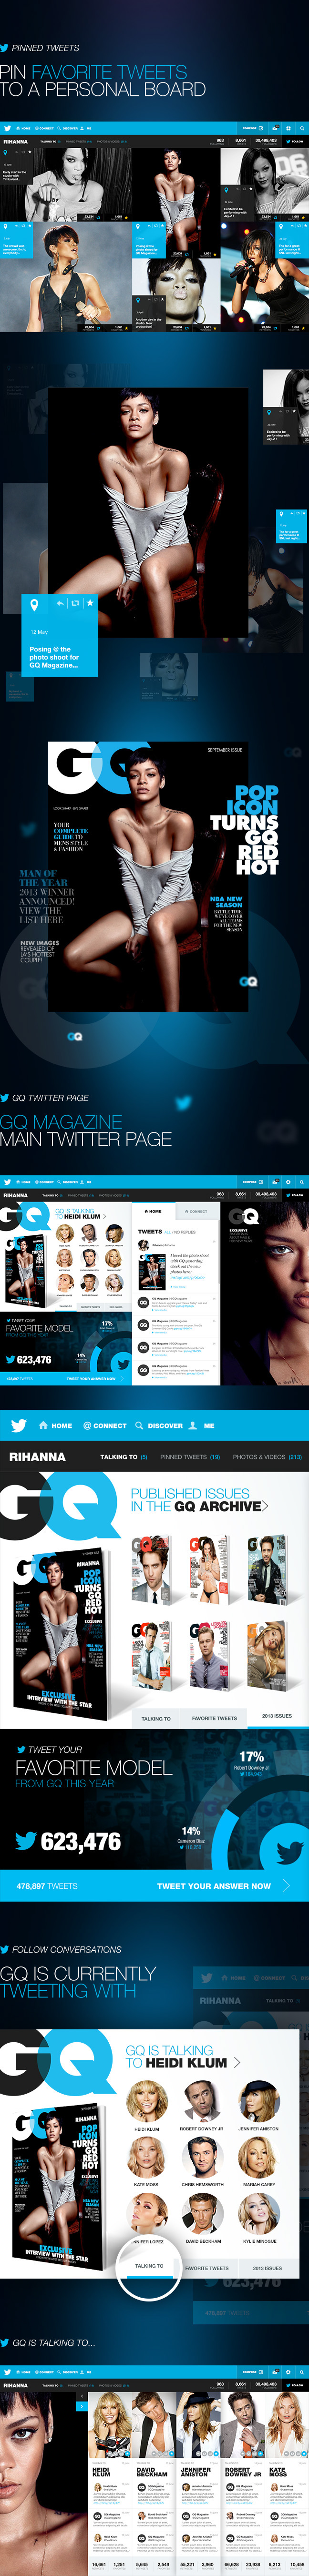 twitter twitter design Twitter 2013 Rihanna ux UI